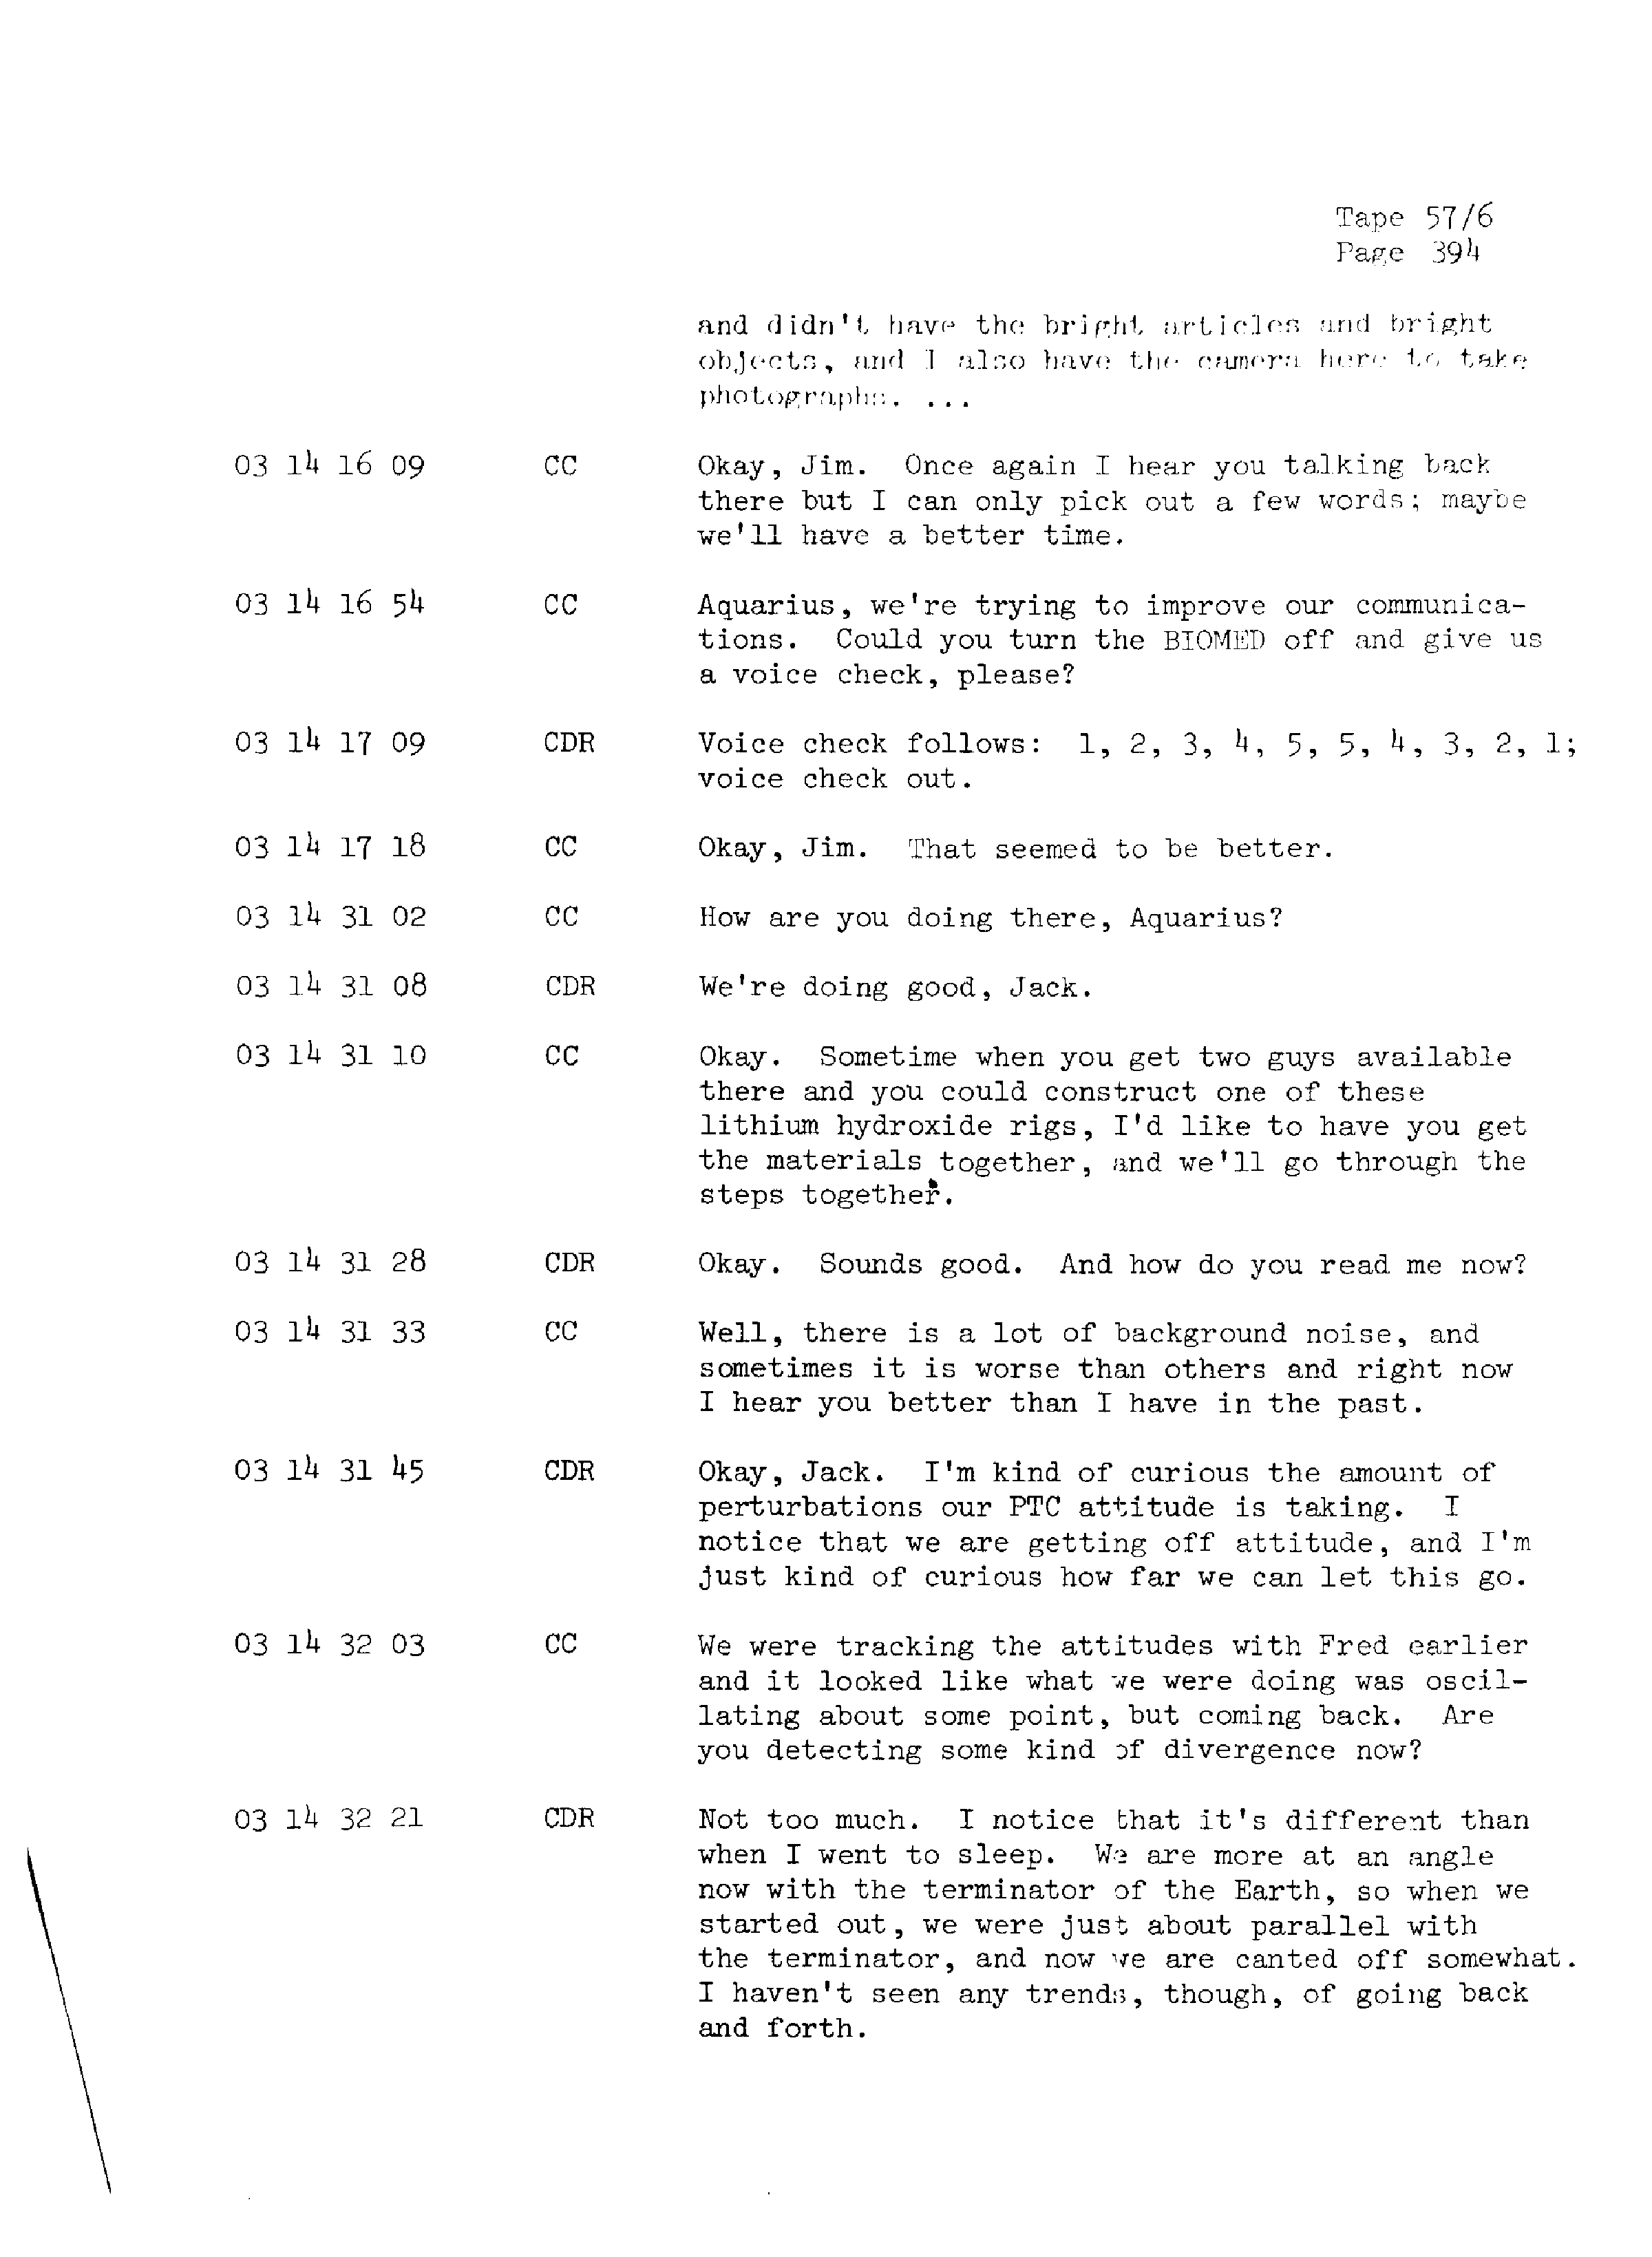 Page 401 of Apollo 13’s original transcript